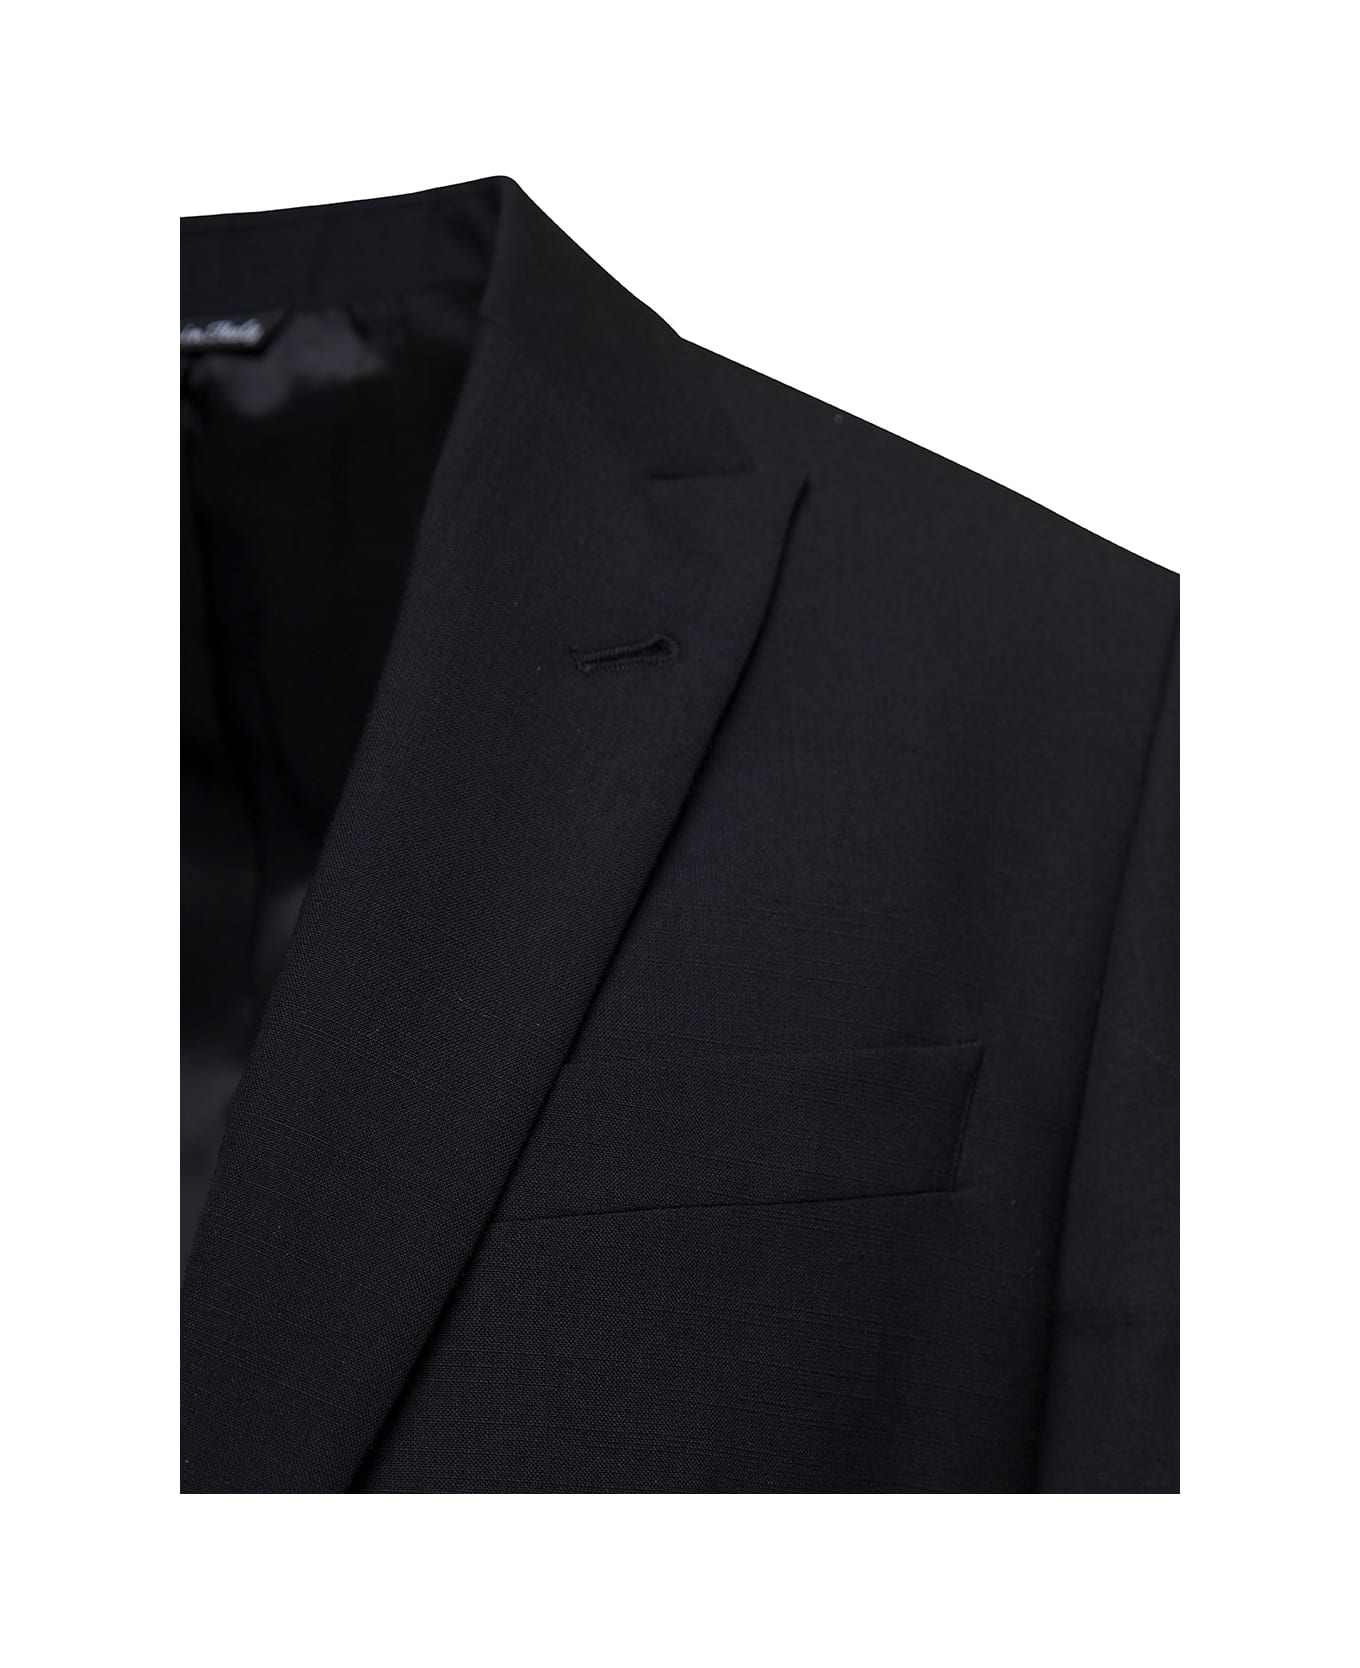 Reveres 1949 Single-breasted Suit In Black Wool Blend Man - Black